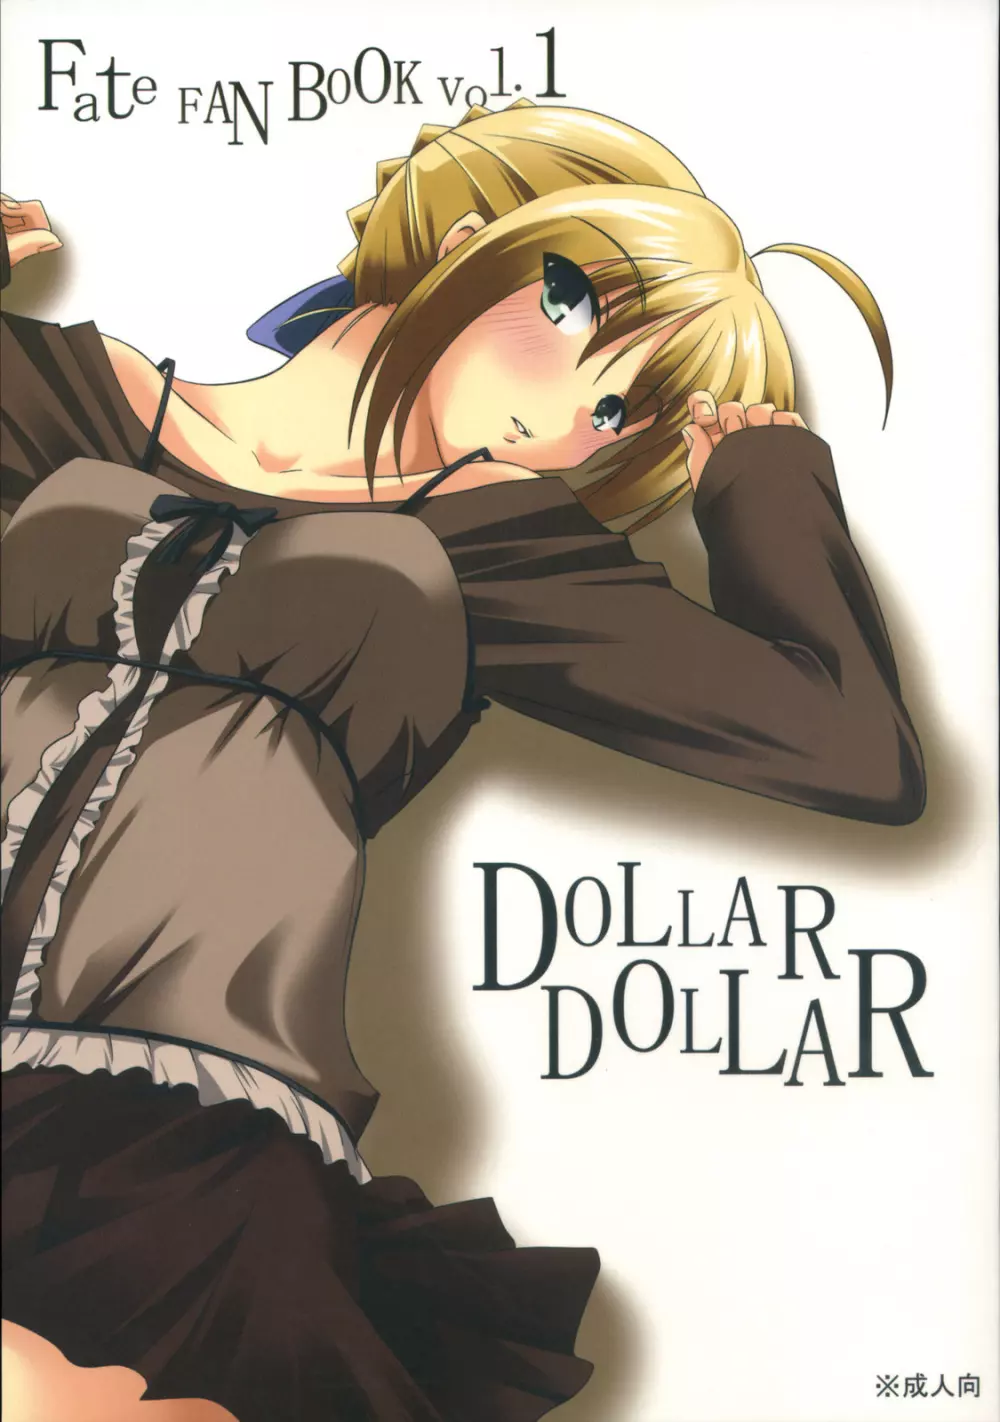 DOLLAR DOLLAR